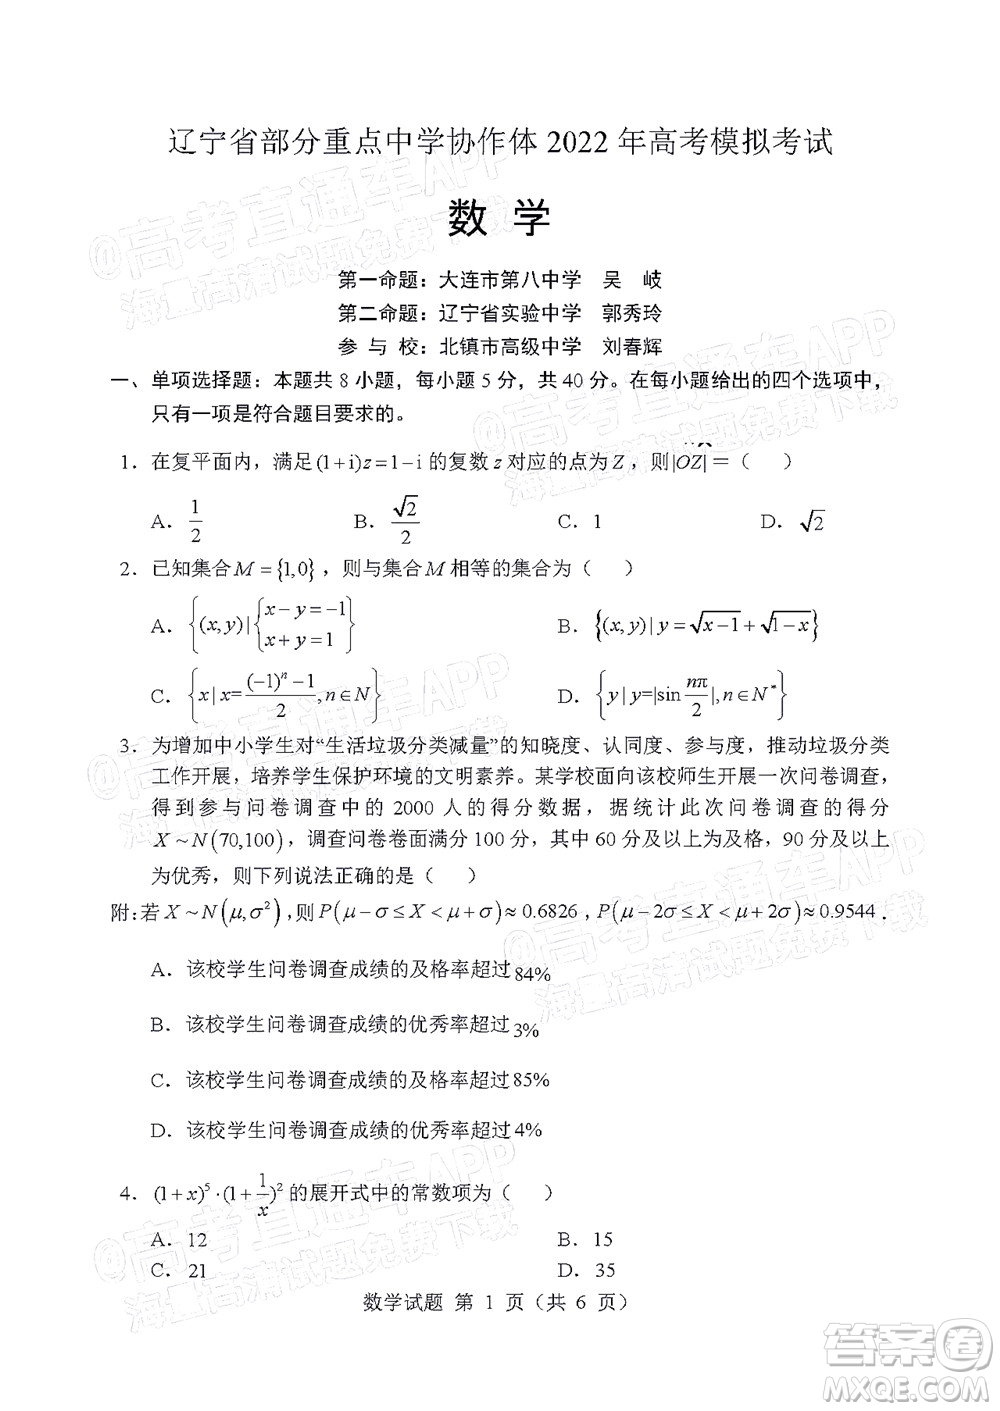 辽宁省部分重点中学协作体2022年模拟考试高三数学试题及答案